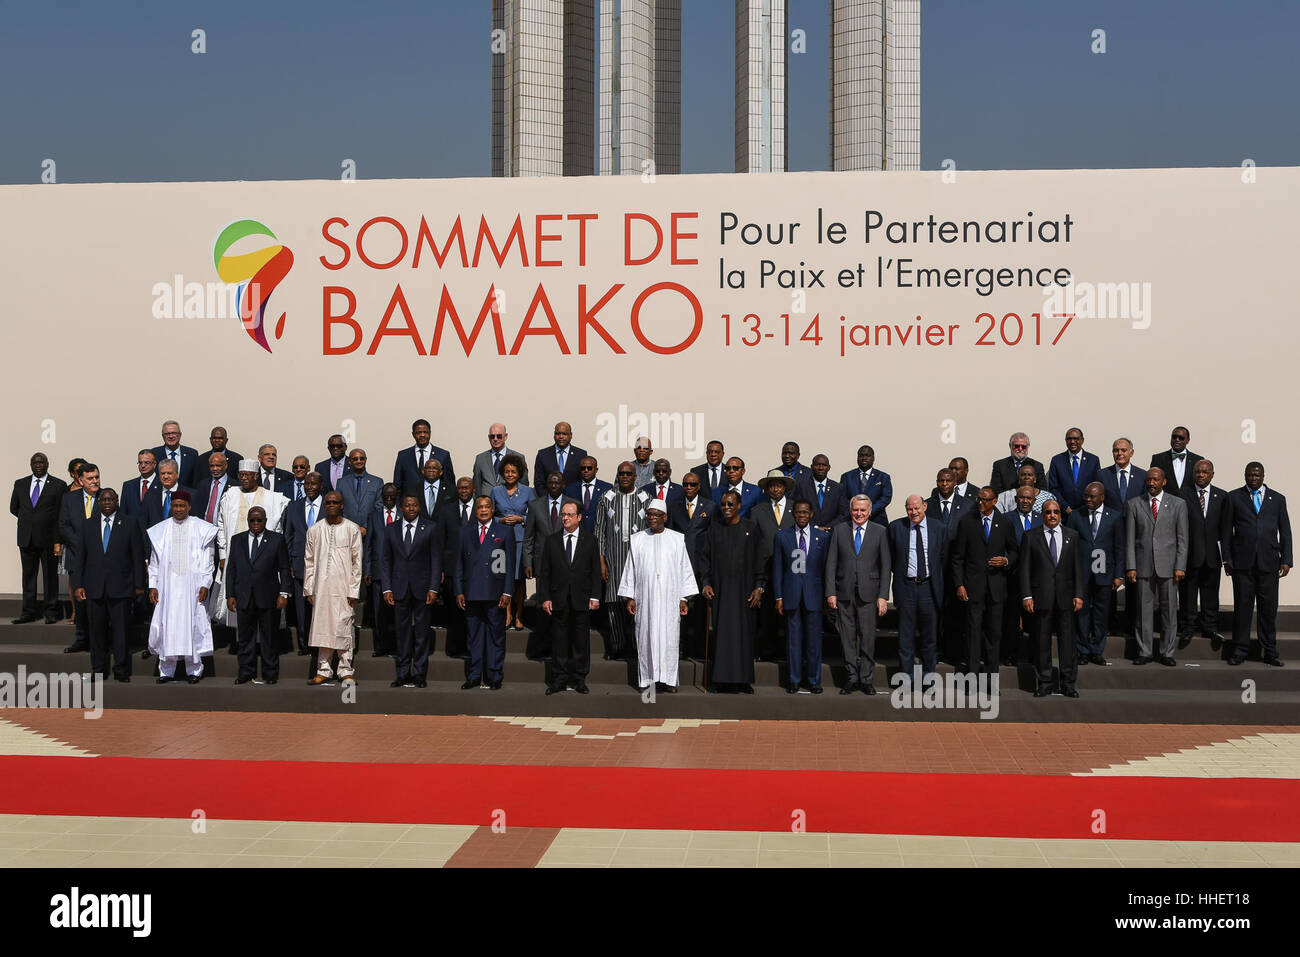 Africa Francia Summit 2017 - 14/01/2017 - Mali / West Africa / Bamako - Bamako, 13 Gennaio 2017 - Vertice Africa-France 2017. Nell'ordine delle foto seguenti: 1 - Arrivo della IBK, Ibrahim Boubacar Keita, Presidente della Repubblica del Mali. Benvenuti in presenza di Jean Marc Ayrault, ministro francese degli Affari Esteri, e Modibo Keita, primo ministro del Mali. 2 - Ritratto di IBK 3 - Arrivo di Francois Hollande ha accolto con favore dalla IBK e Jean Marc Ayrault 4 - IBK Et Holland e infine la foto di famiglia. - Nicolas Remene / Le Pictorium Foto Stock